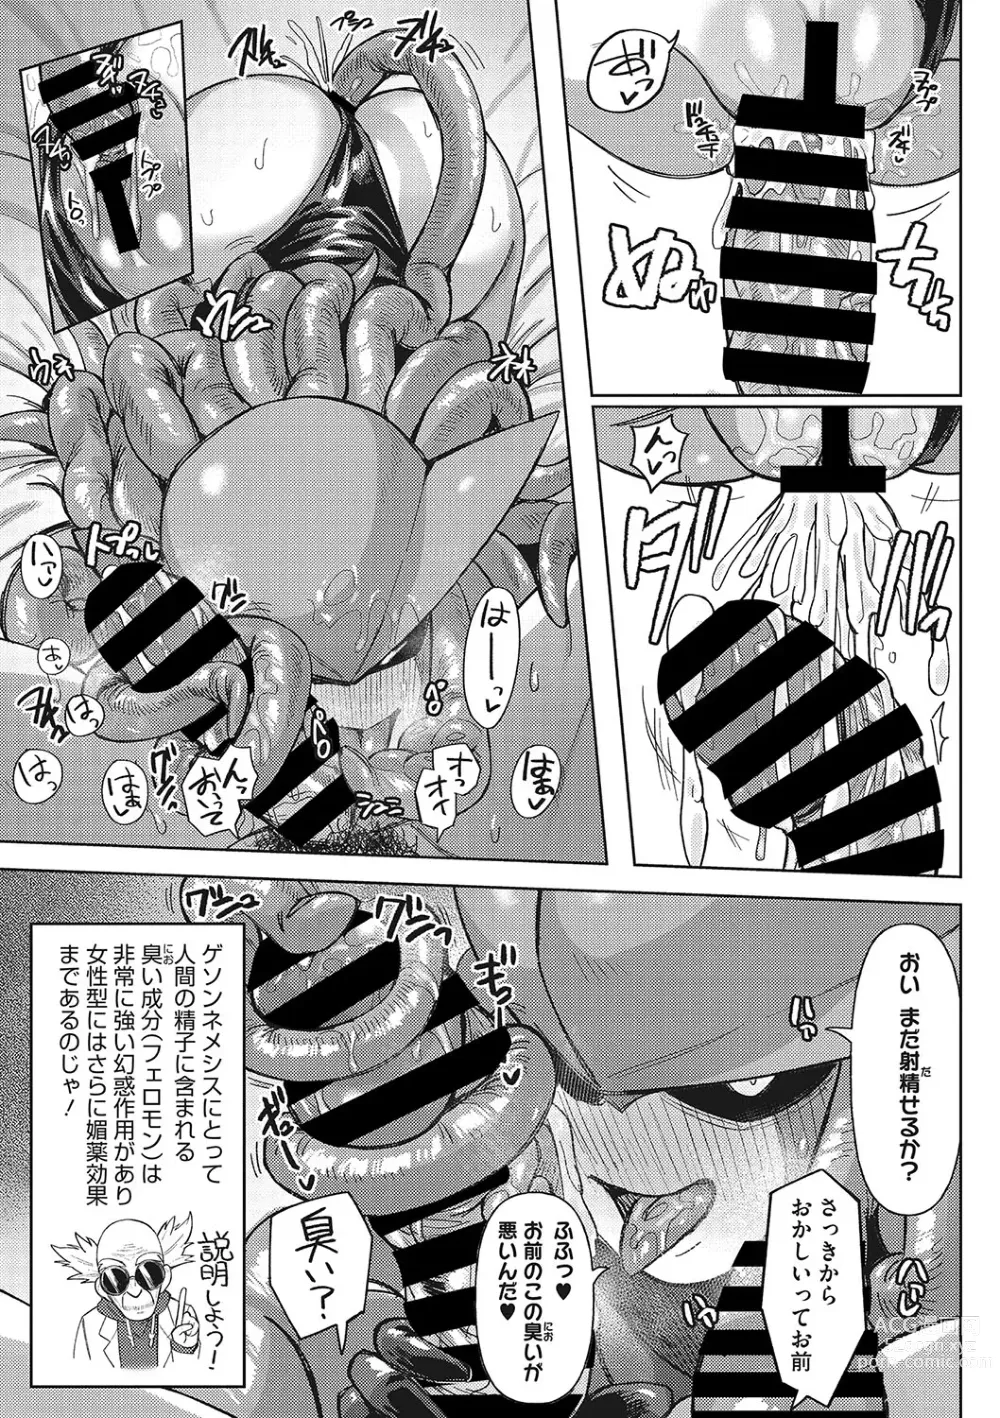 Page 16 of manga Jingai The Universe